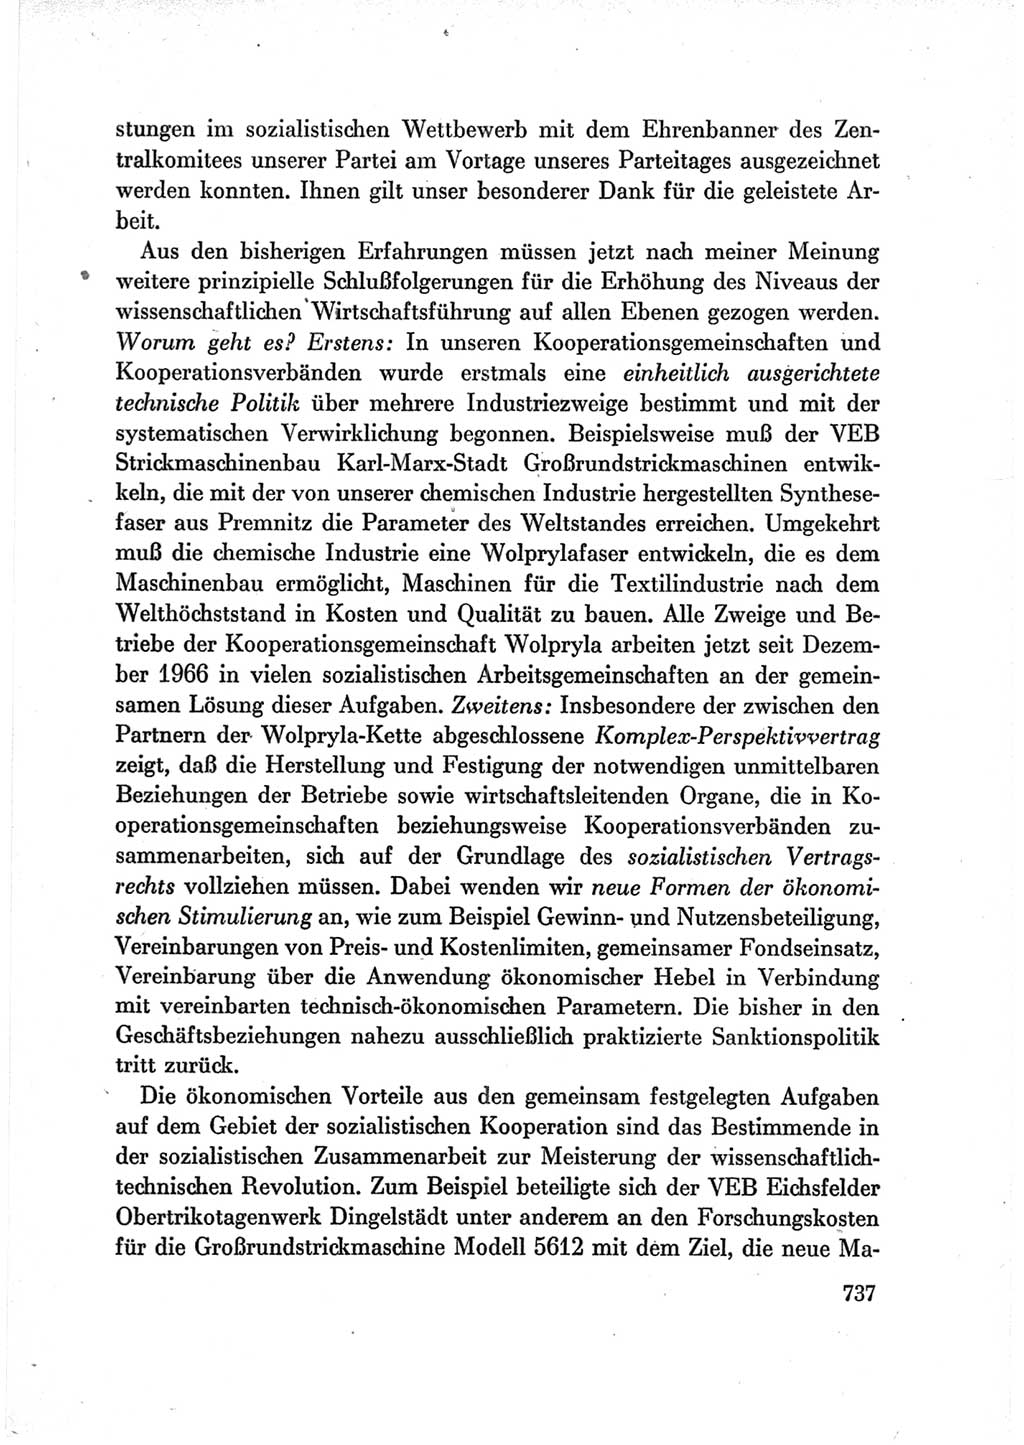 Protokoll der Verhandlungen des Ⅶ. Parteitages der Sozialistischen Einheitspartei Deutschlands (SED) [Deutsche Demokratische Republik (DDR)] 1967, Band Ⅲ, Seite 737 (Prot. Verh. Ⅶ. PT SED DDR 1967, Bd. Ⅲ, S. 737)